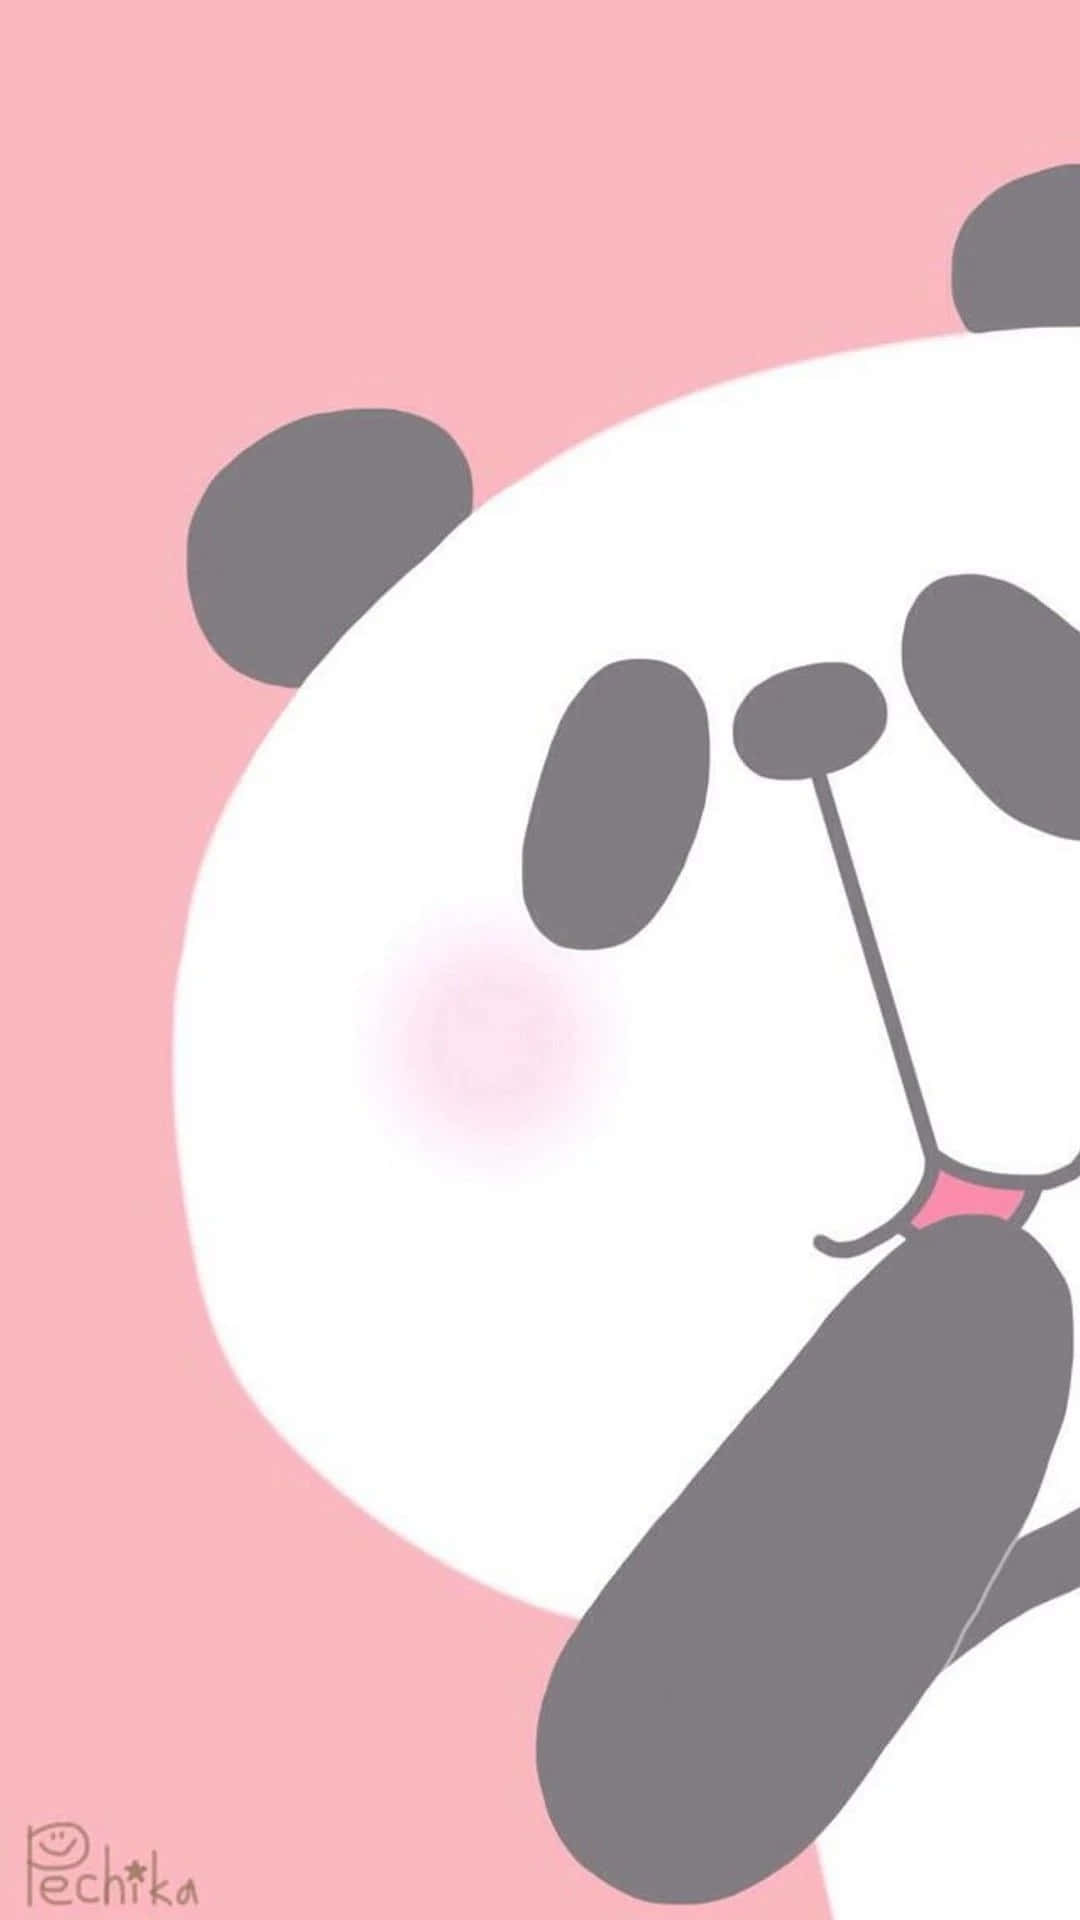 Free Cute Panda Wallpaper Downloads, Cute Panda Wallpaper for FREE